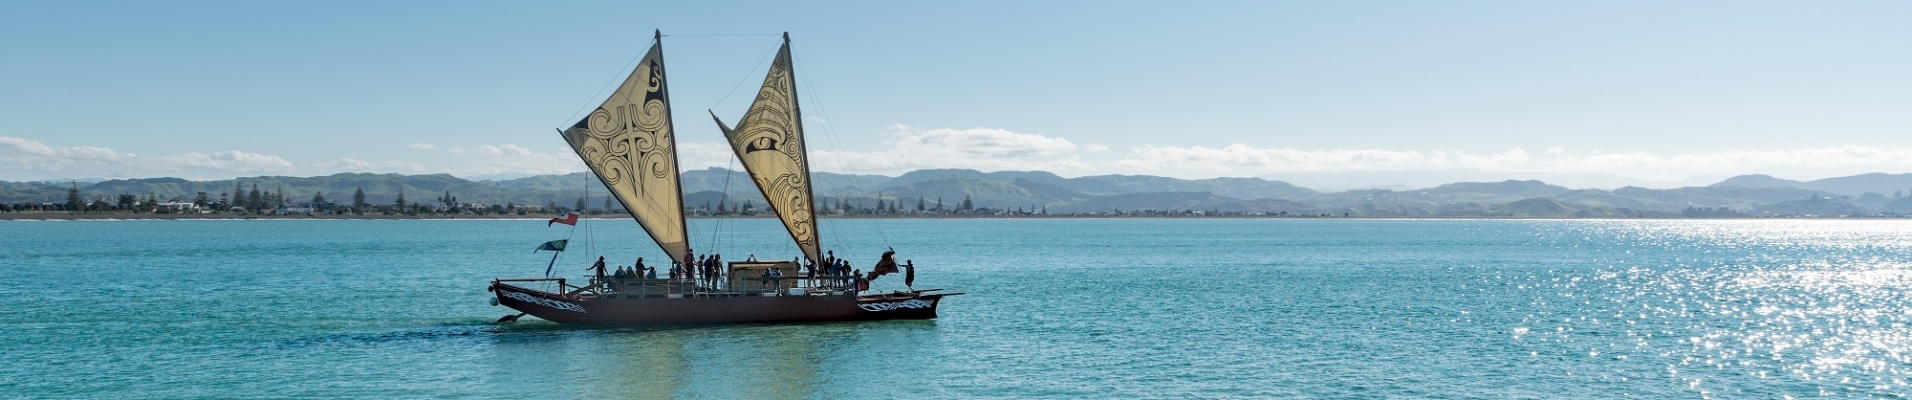 canoe maori sur l'eau avec des voiles